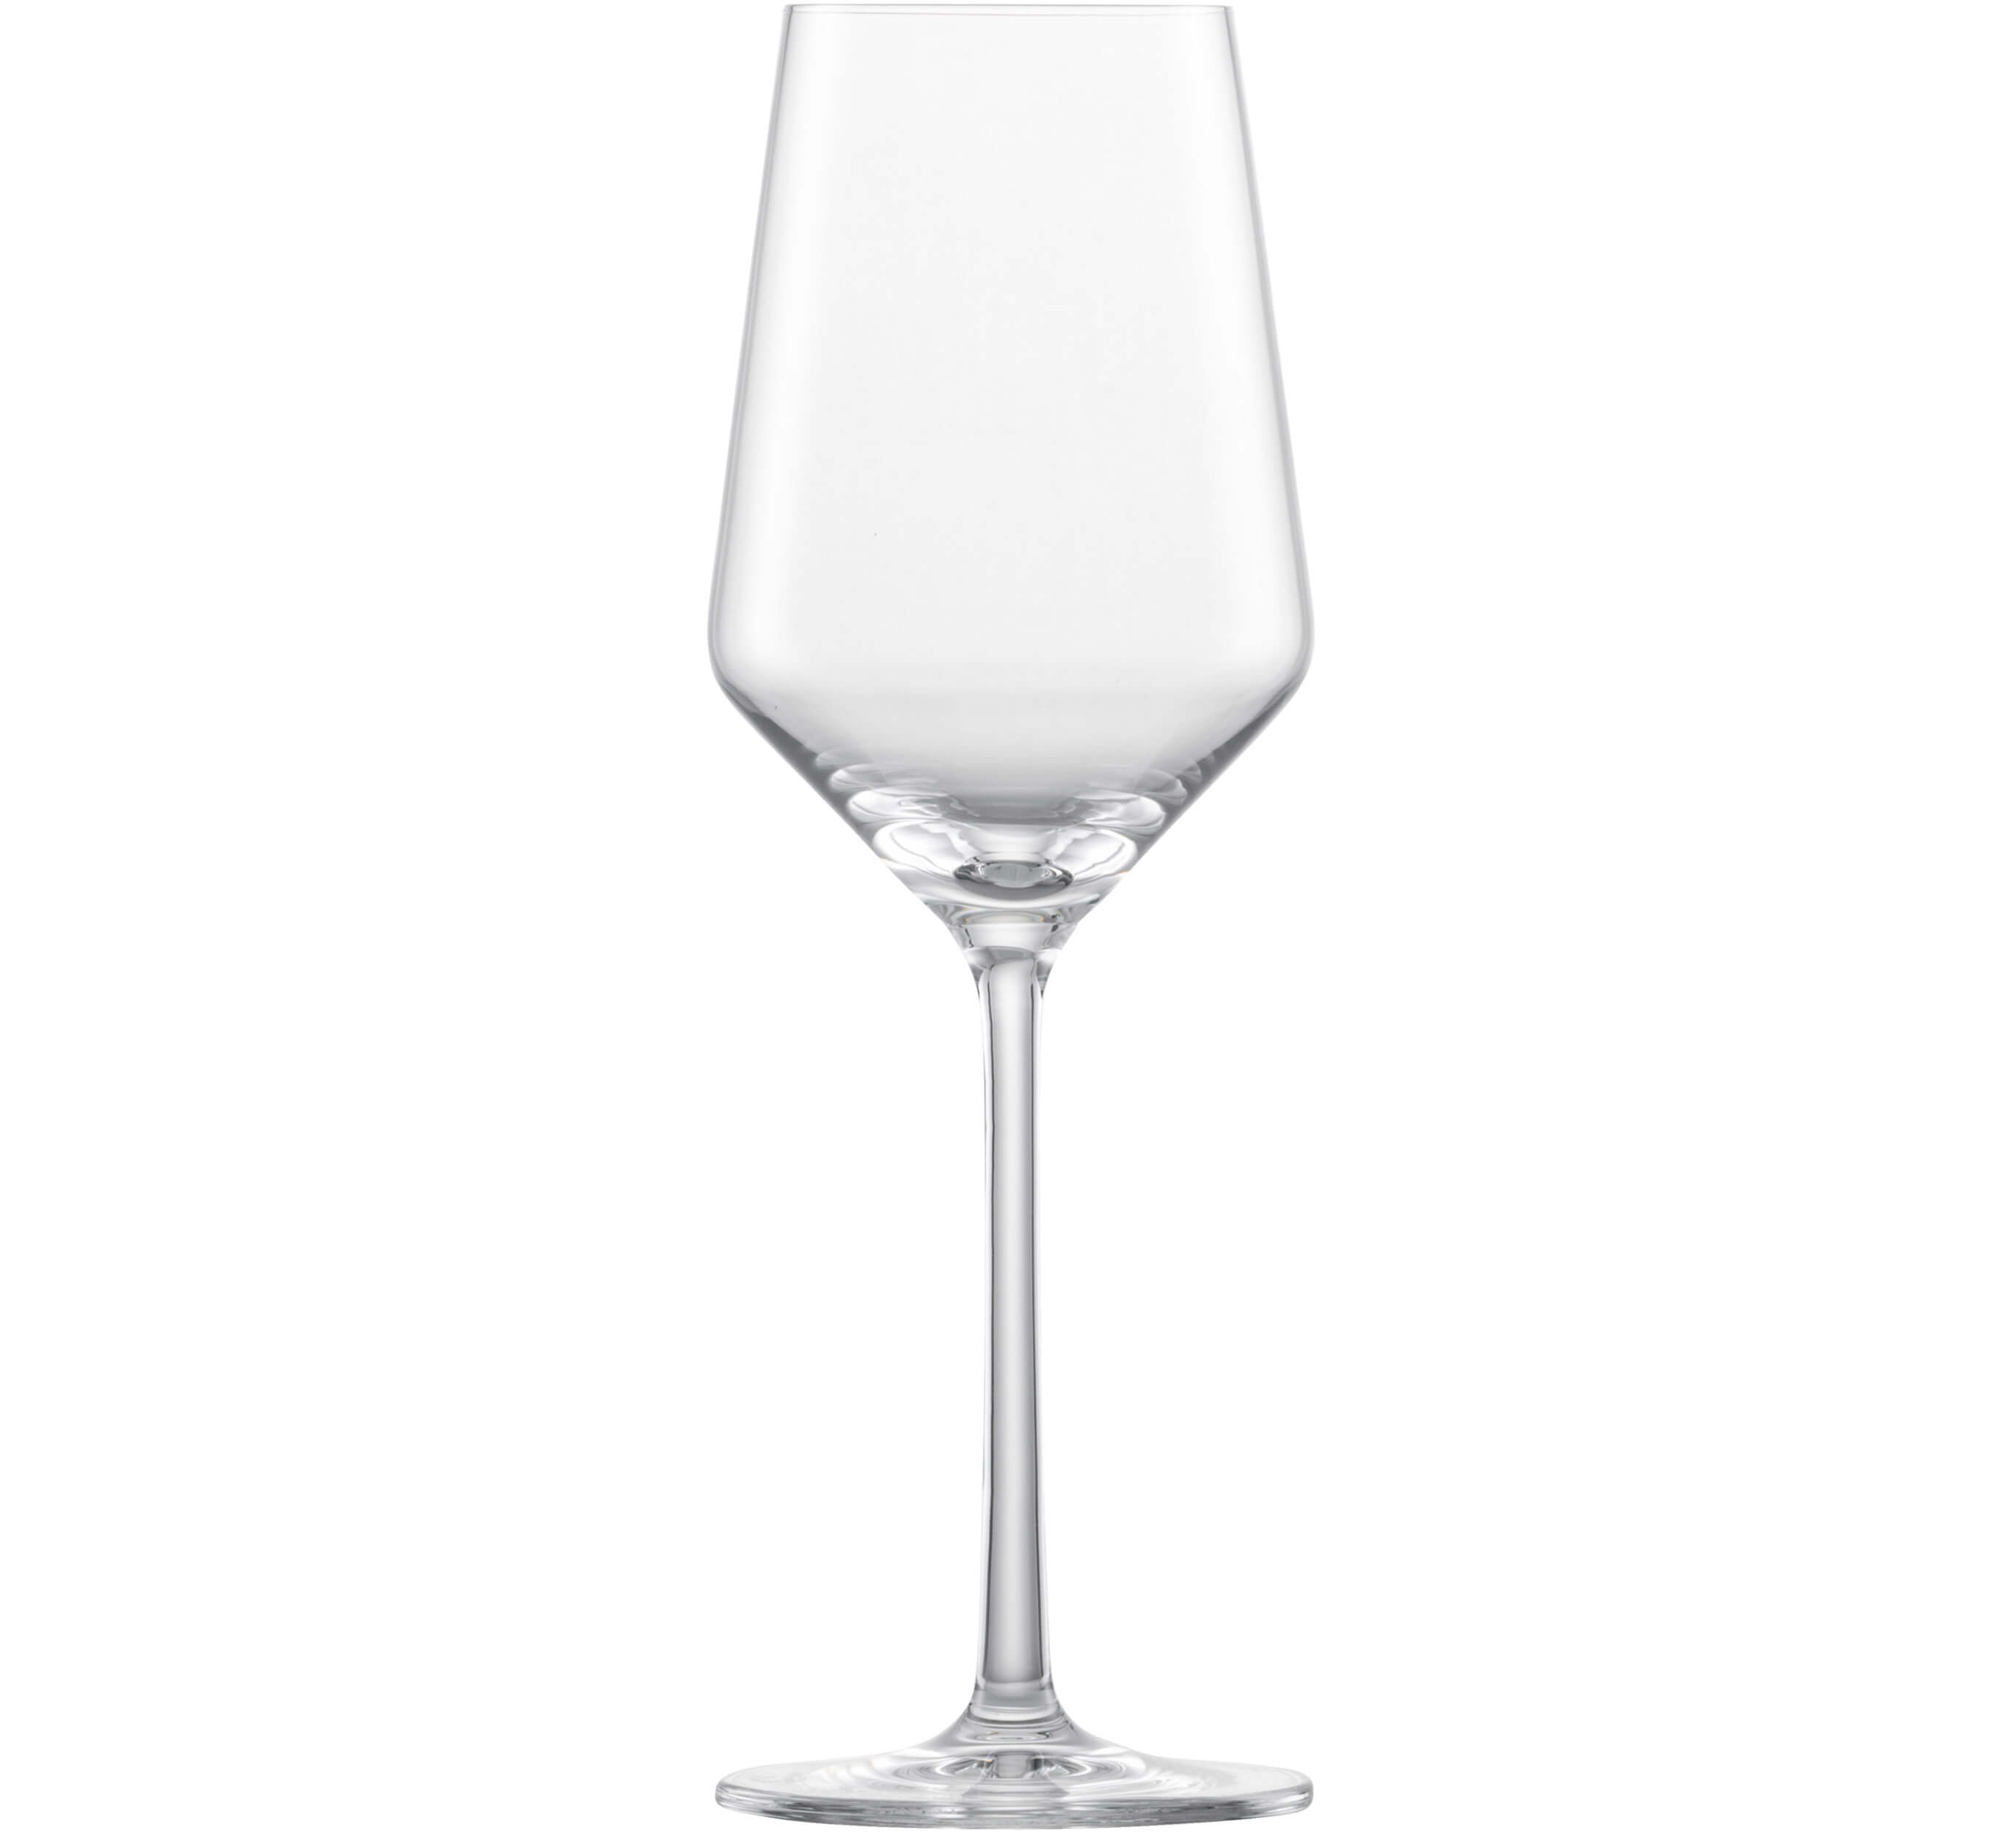 Weißweinglas Riesling Belfesta, Zwiesel Glas - 300ml, 0,1l Eiche (6 Stk.)